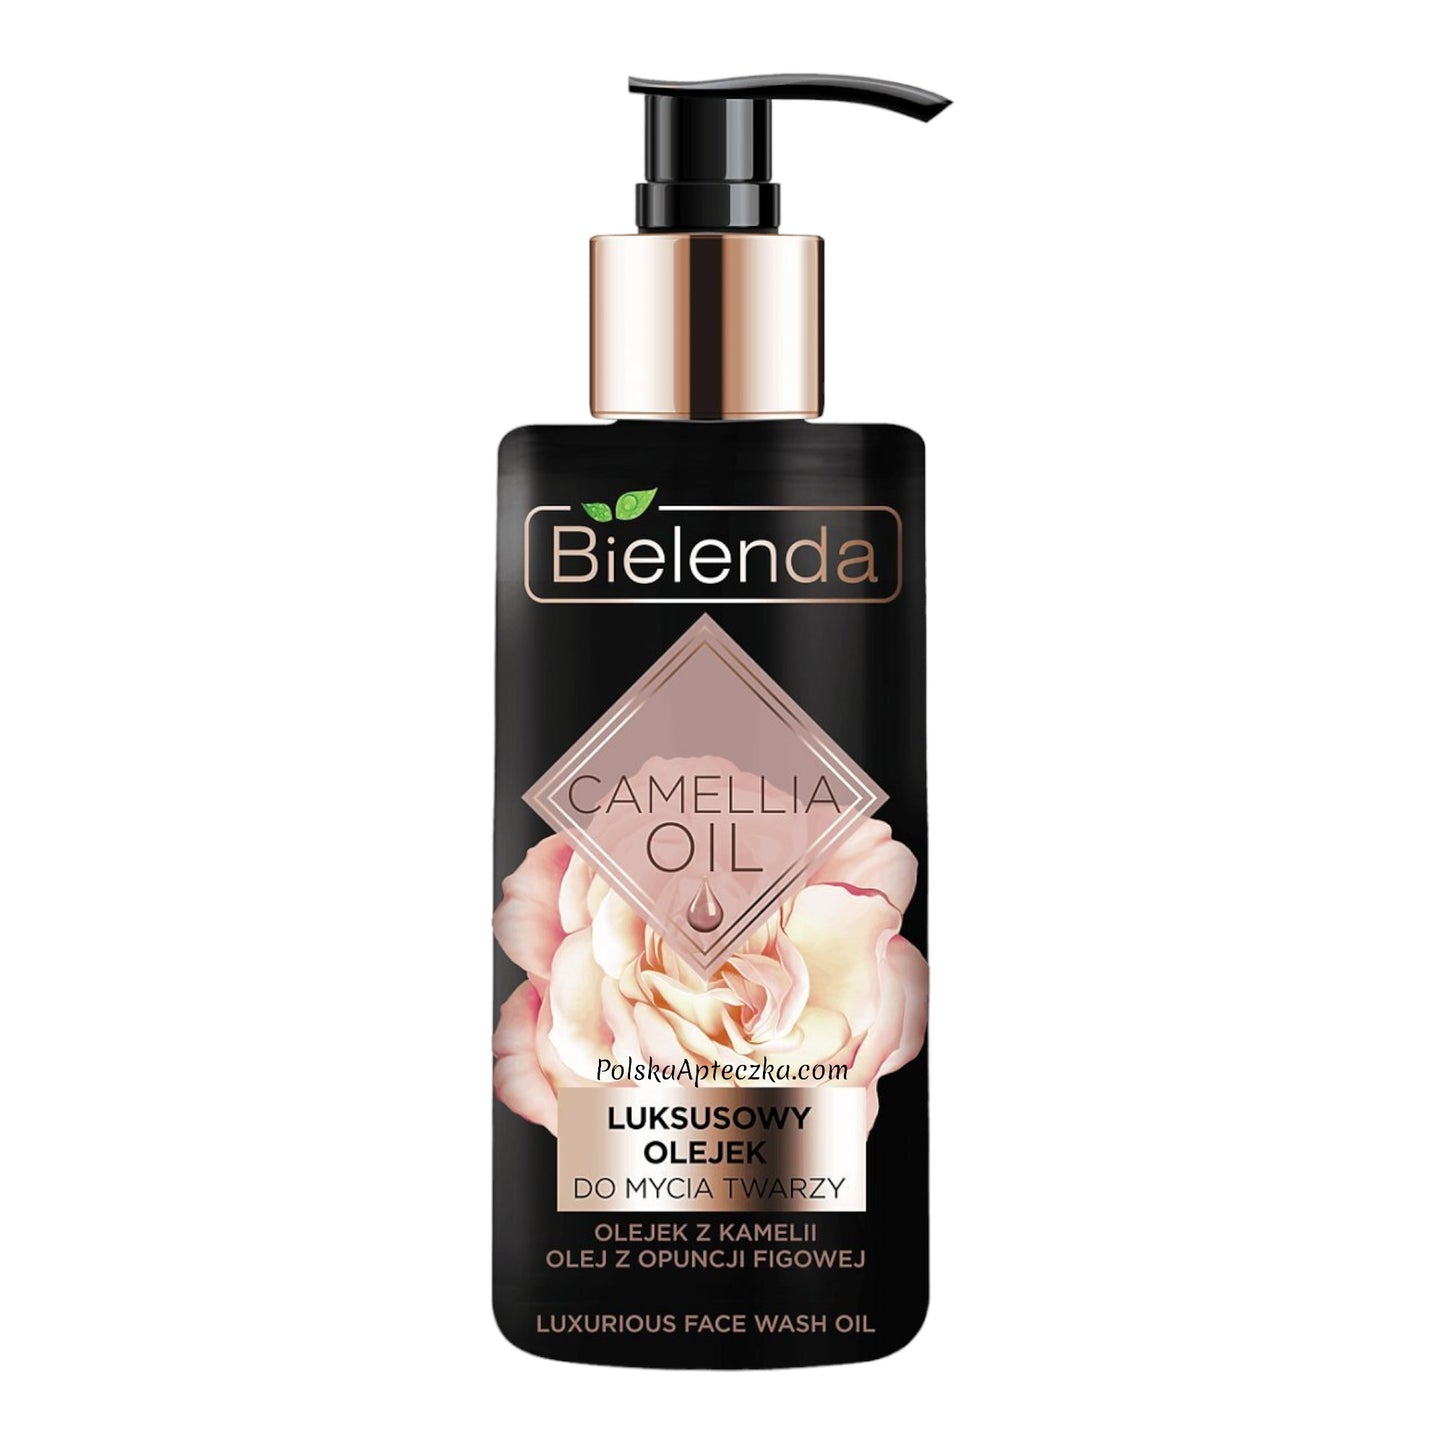 Bielenda, Camellia Oil Luksusowy olejek do mycia twarzy 140ml